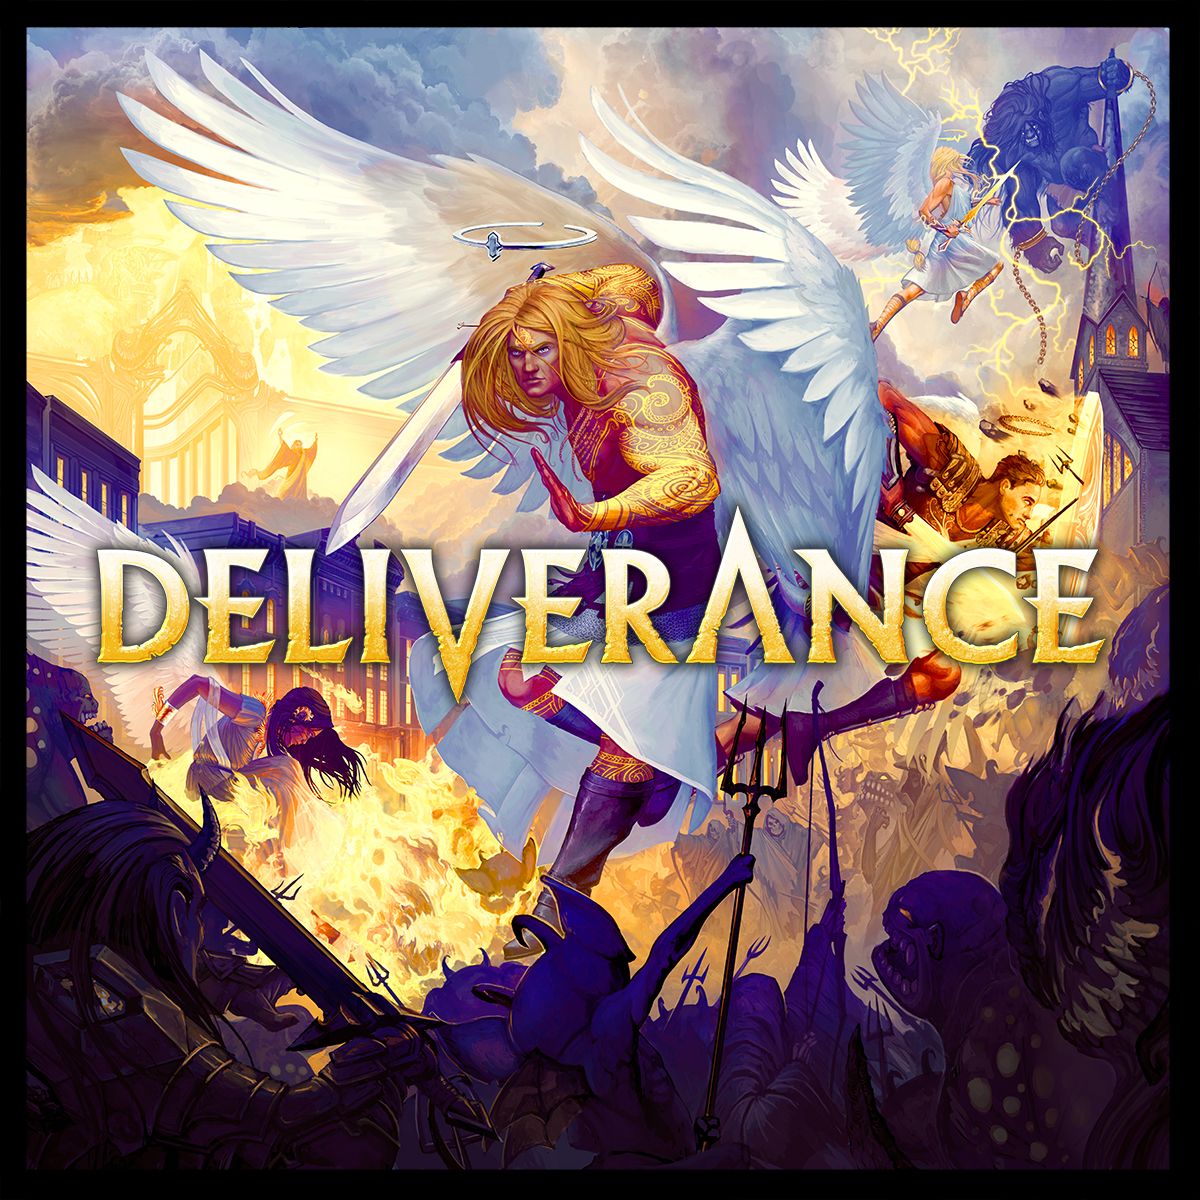 Deliverance Deluxe Pledge Kickstarter Ausgabe Stretch Goals KS Exclusives englisch